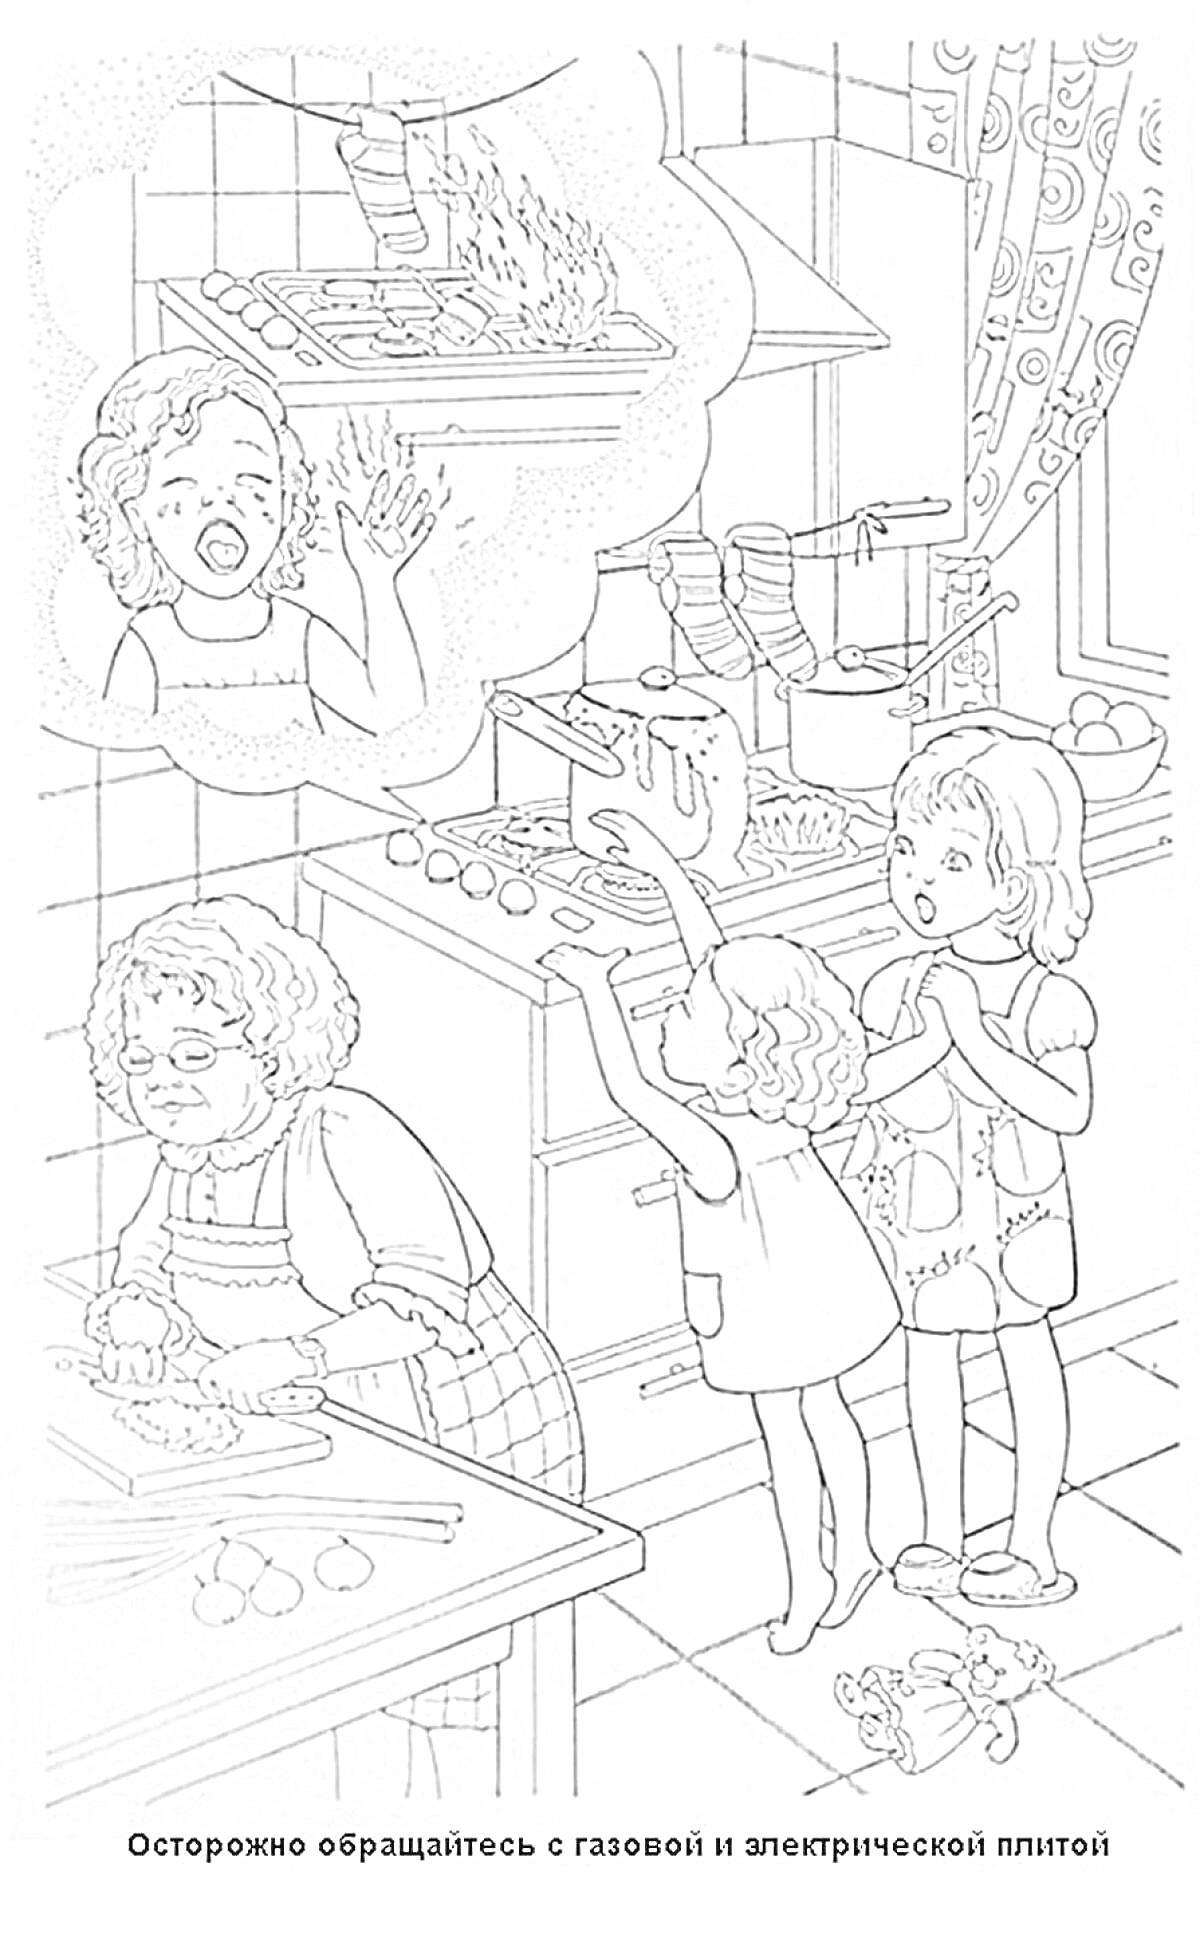 На кухне – Осторожно обращайтесь с газовой и электрической плитой (дети рядом с плитой, горящий чайник, бабушка готовит еду)